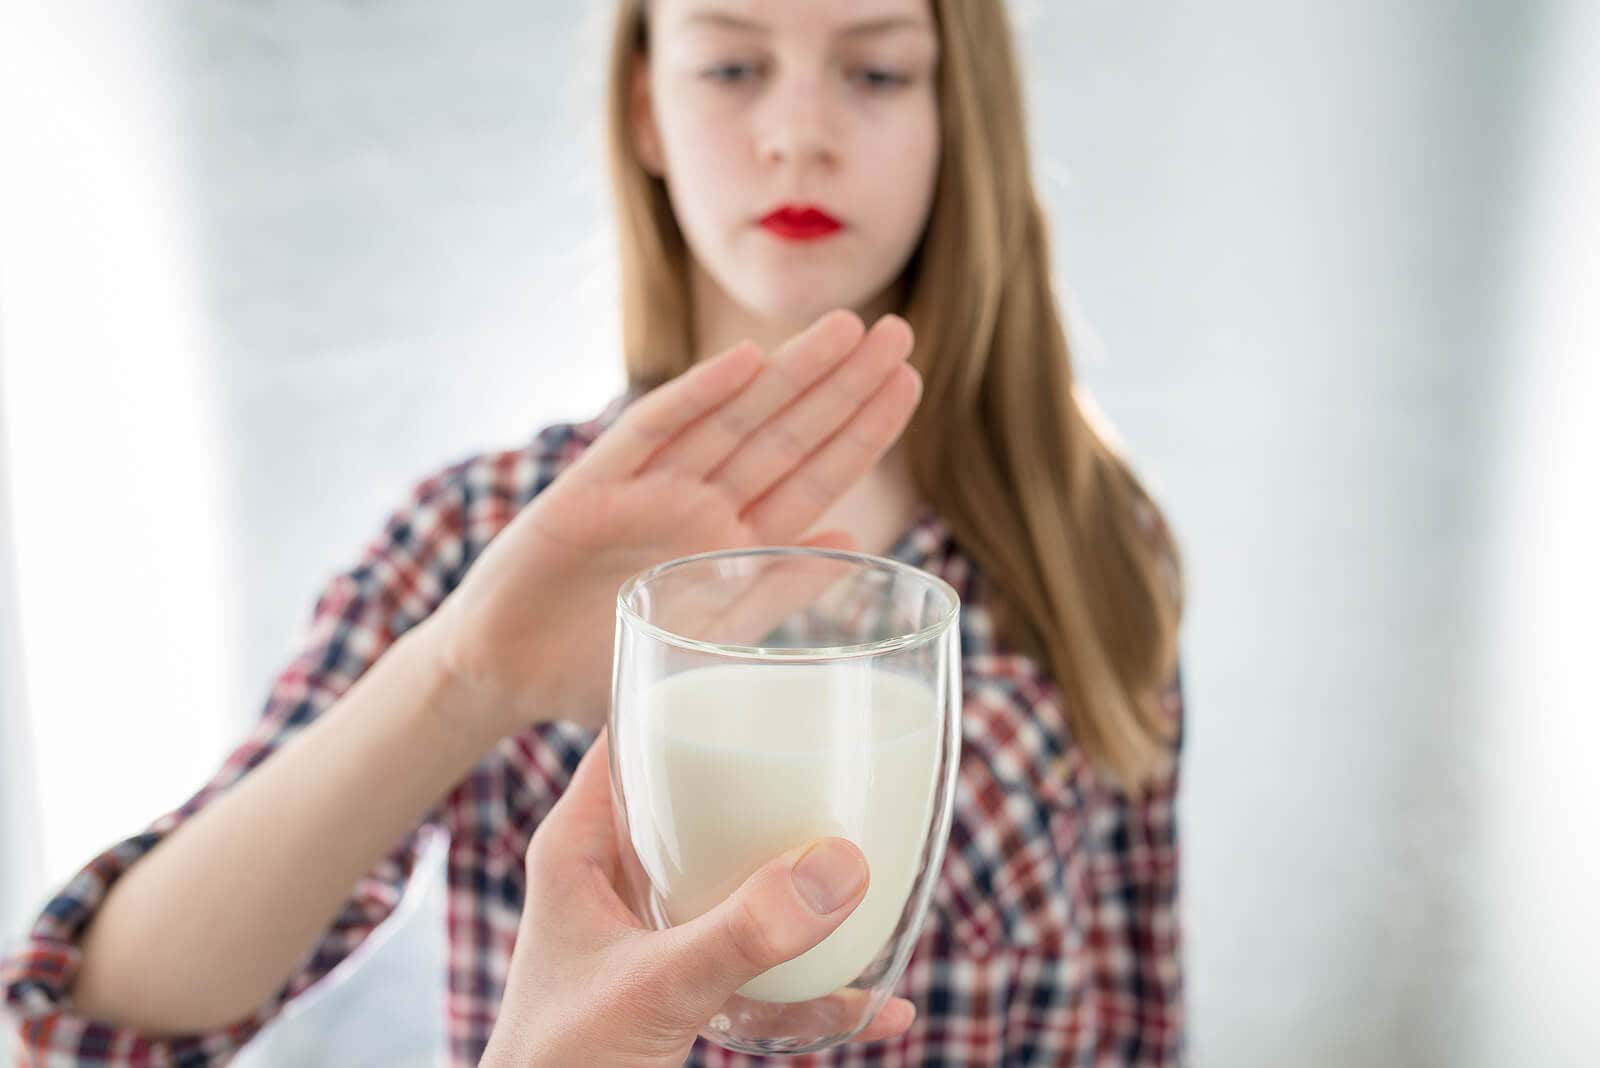 Intolerancia a la lactosa: ¿qué alimentos evitar?